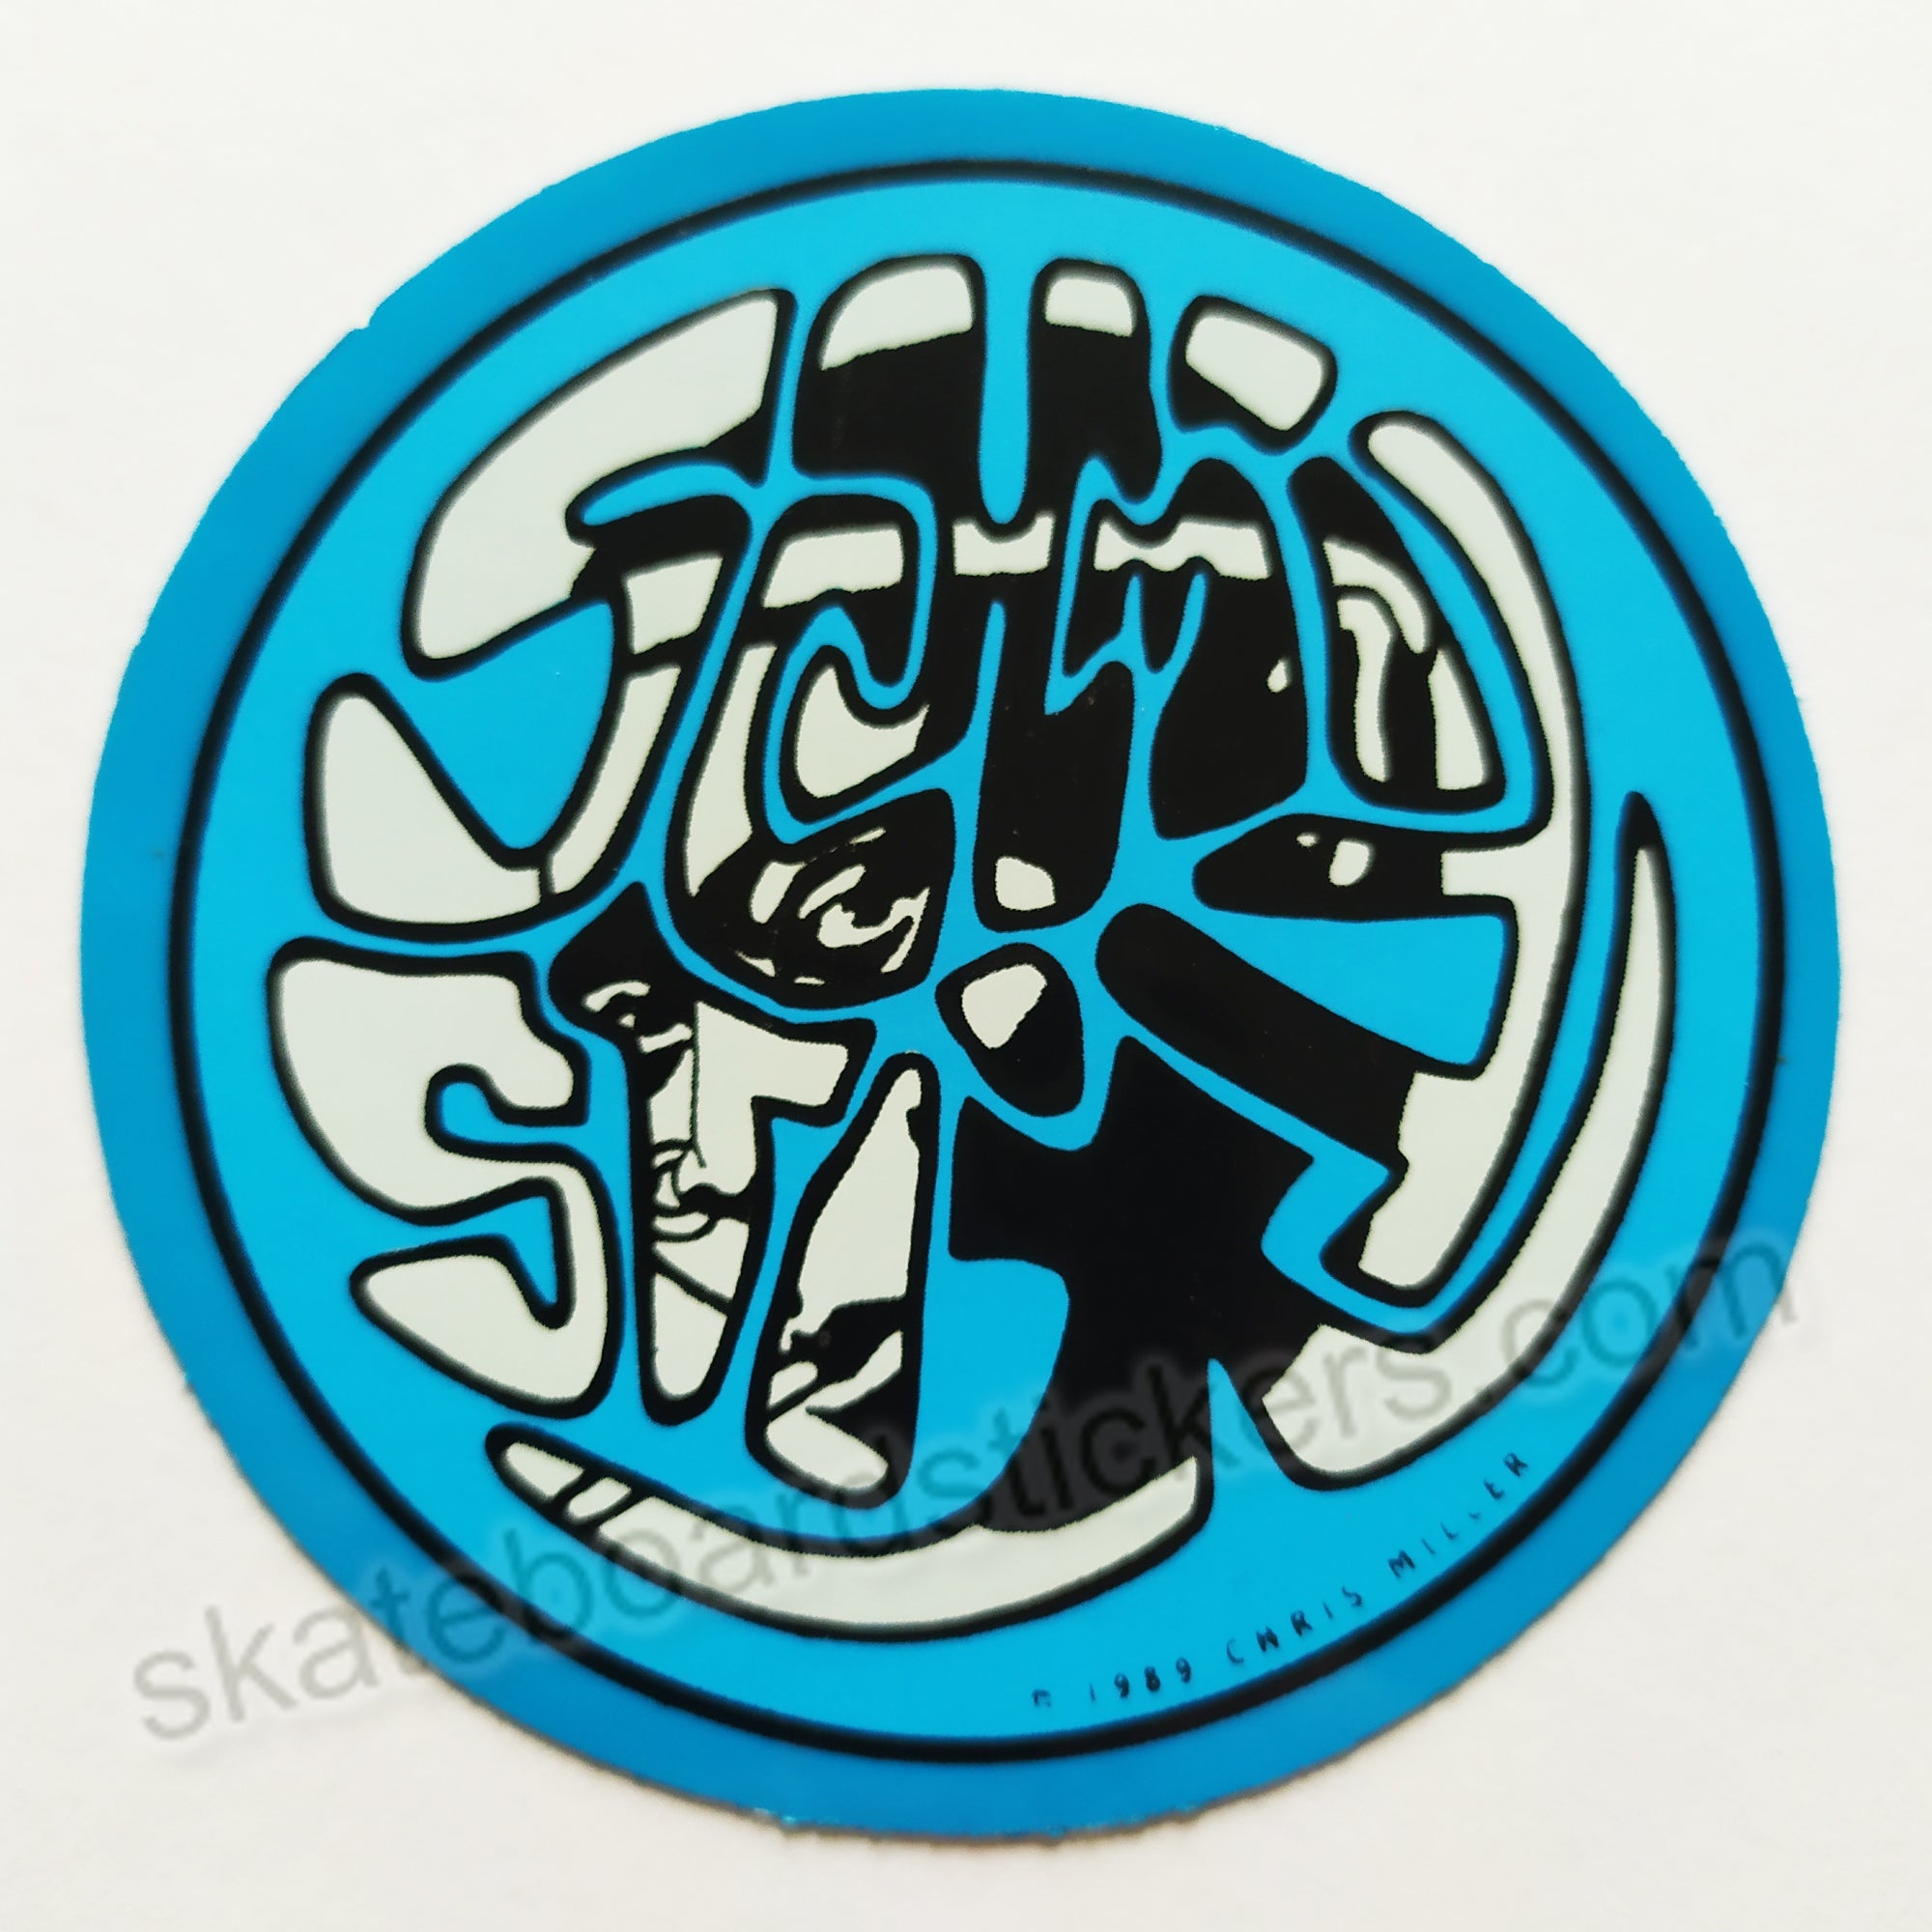 Schmitt Stix - Silly Stix Skateboard Sticker - blue